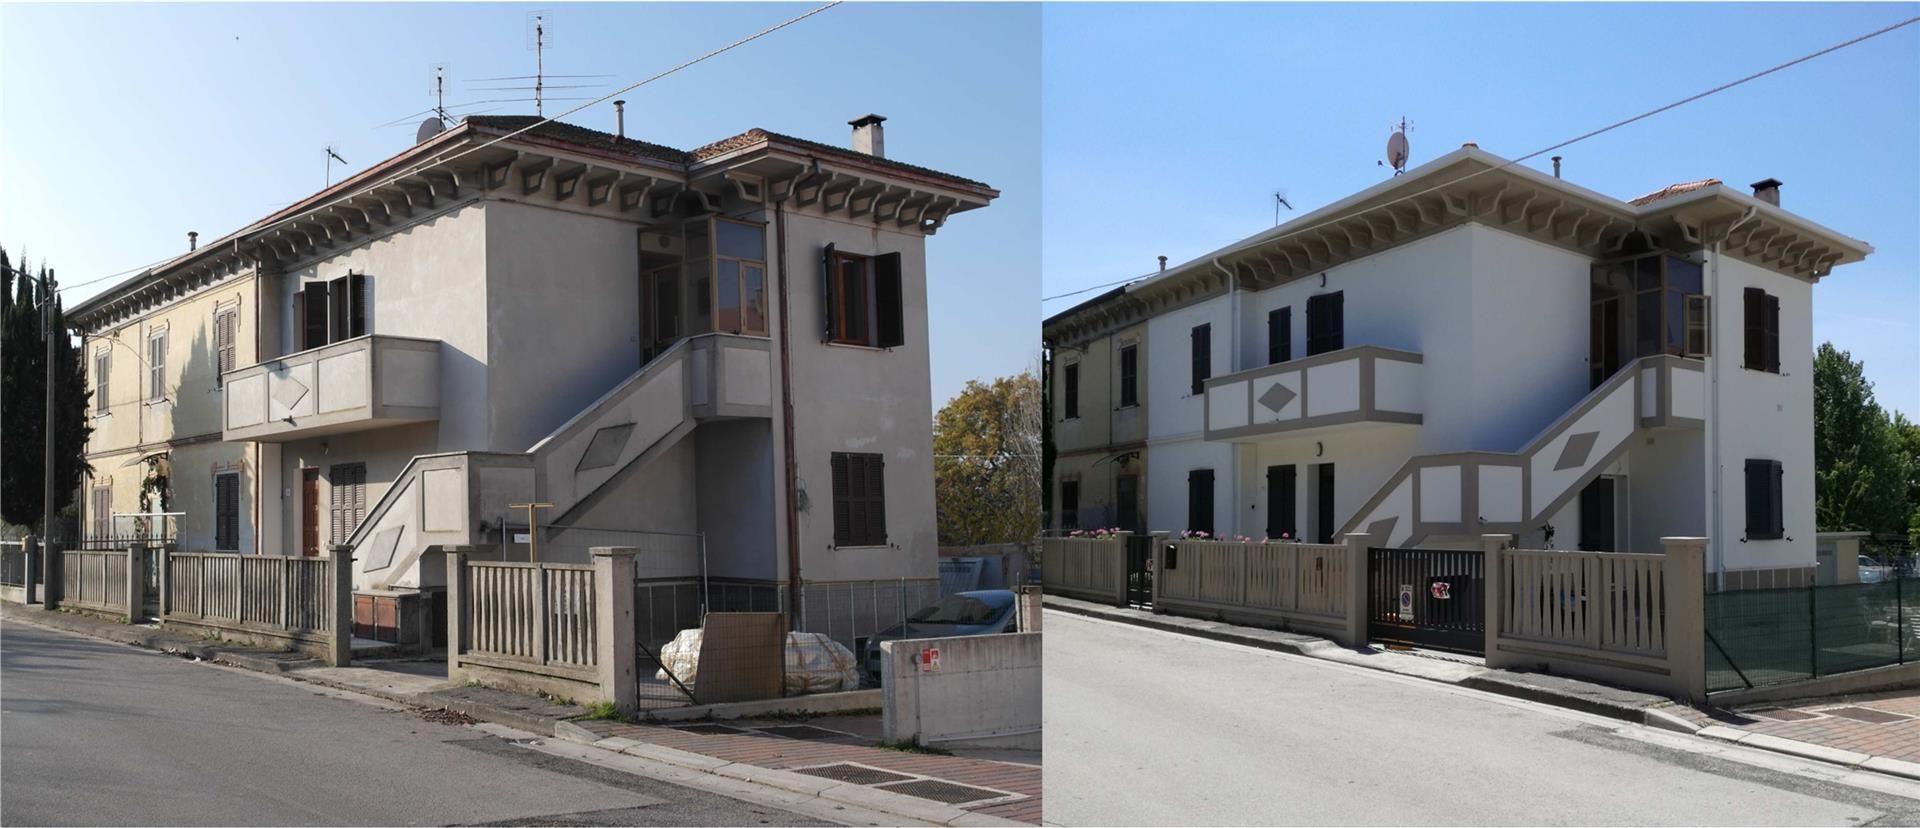 MANUTENZIONE STRAORDINARIA E NUOVA DISTRIBUZIONE INTERNA, Luigi Verdini Luigi Verdini Modern houses